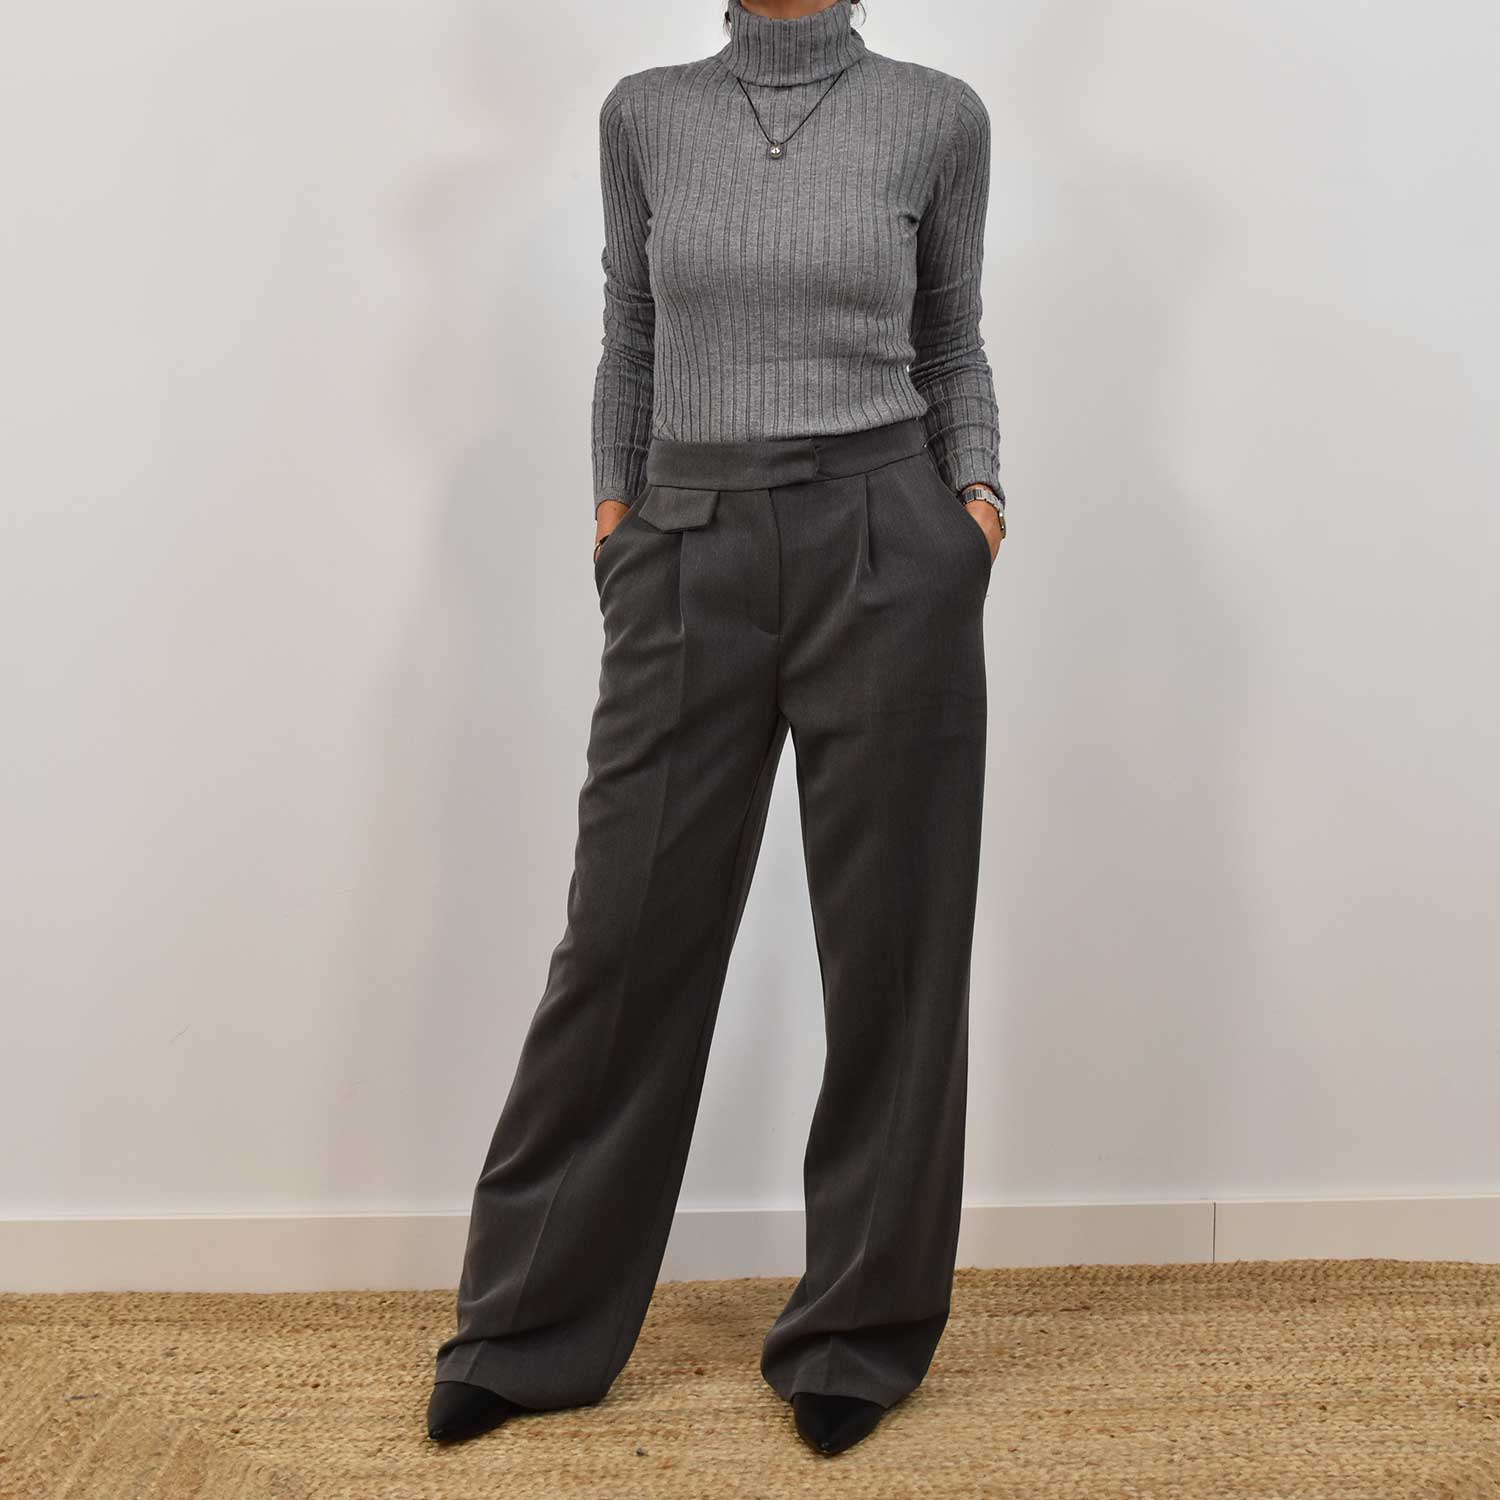 Gray pinstripe pants – The Amisy Company